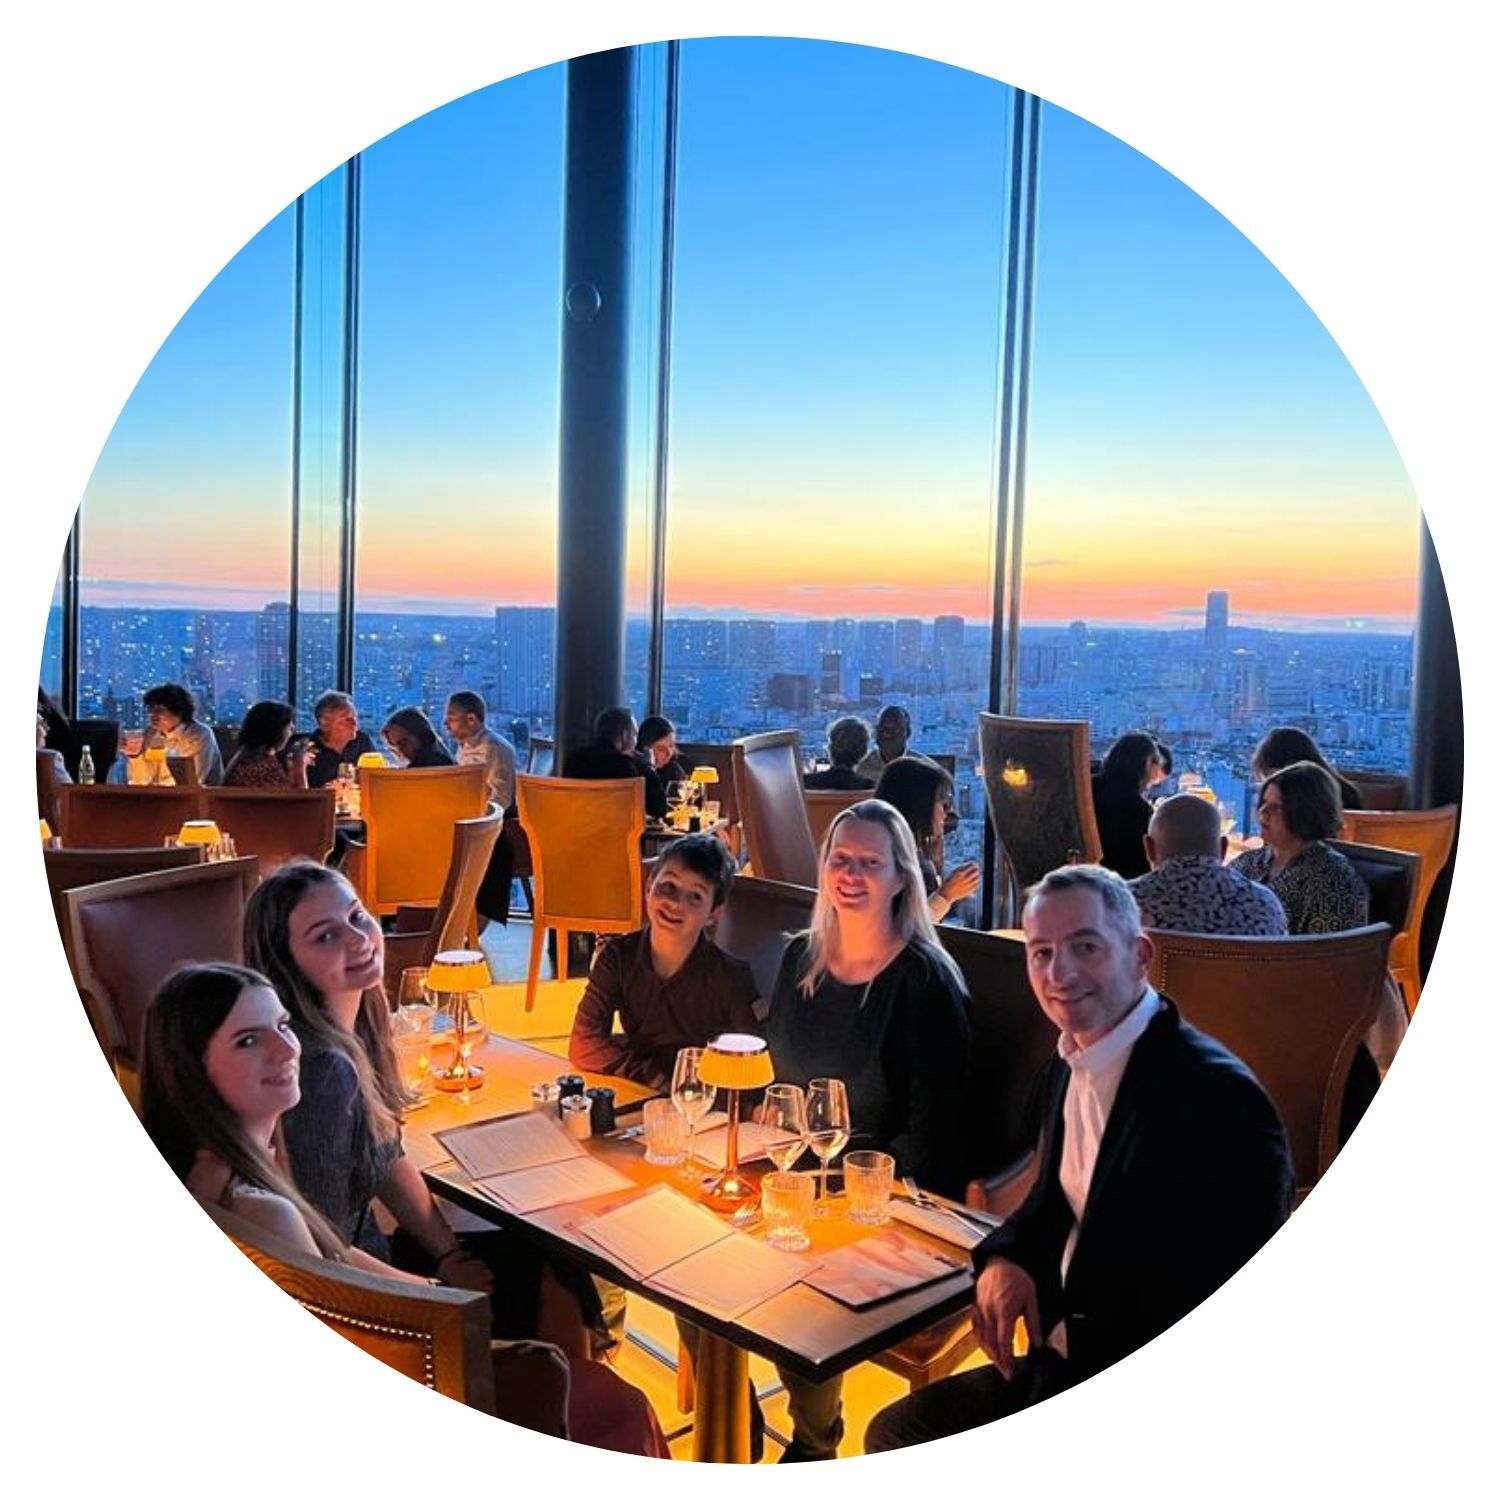 Une famille de cinq personnes dîne dans un restaurant élégant avec de grandes fenêtres offrant une vue panoramique sur New York. Les membres de la famille sont souriants et apprécient leur repas ensemble.